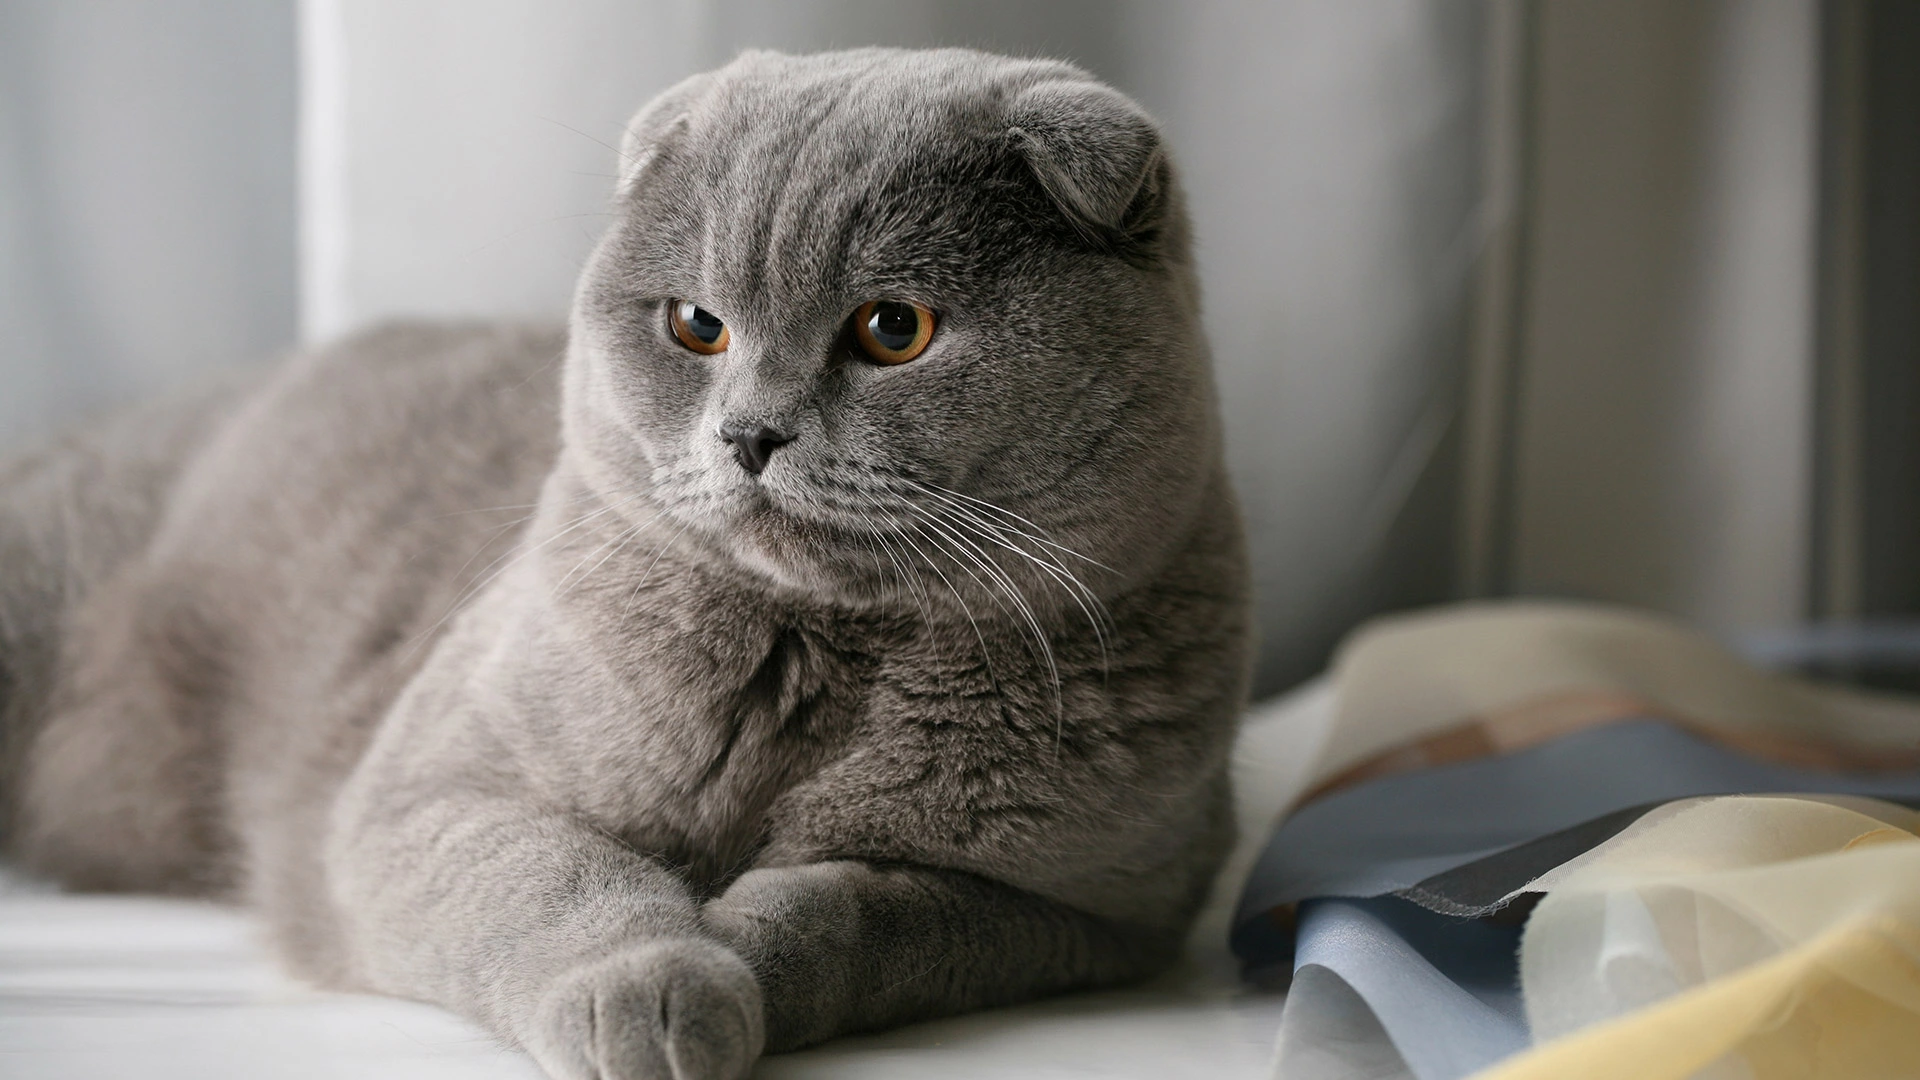 Шотландская вислоухая кошка: фото, характер, описание породы | РБК Life